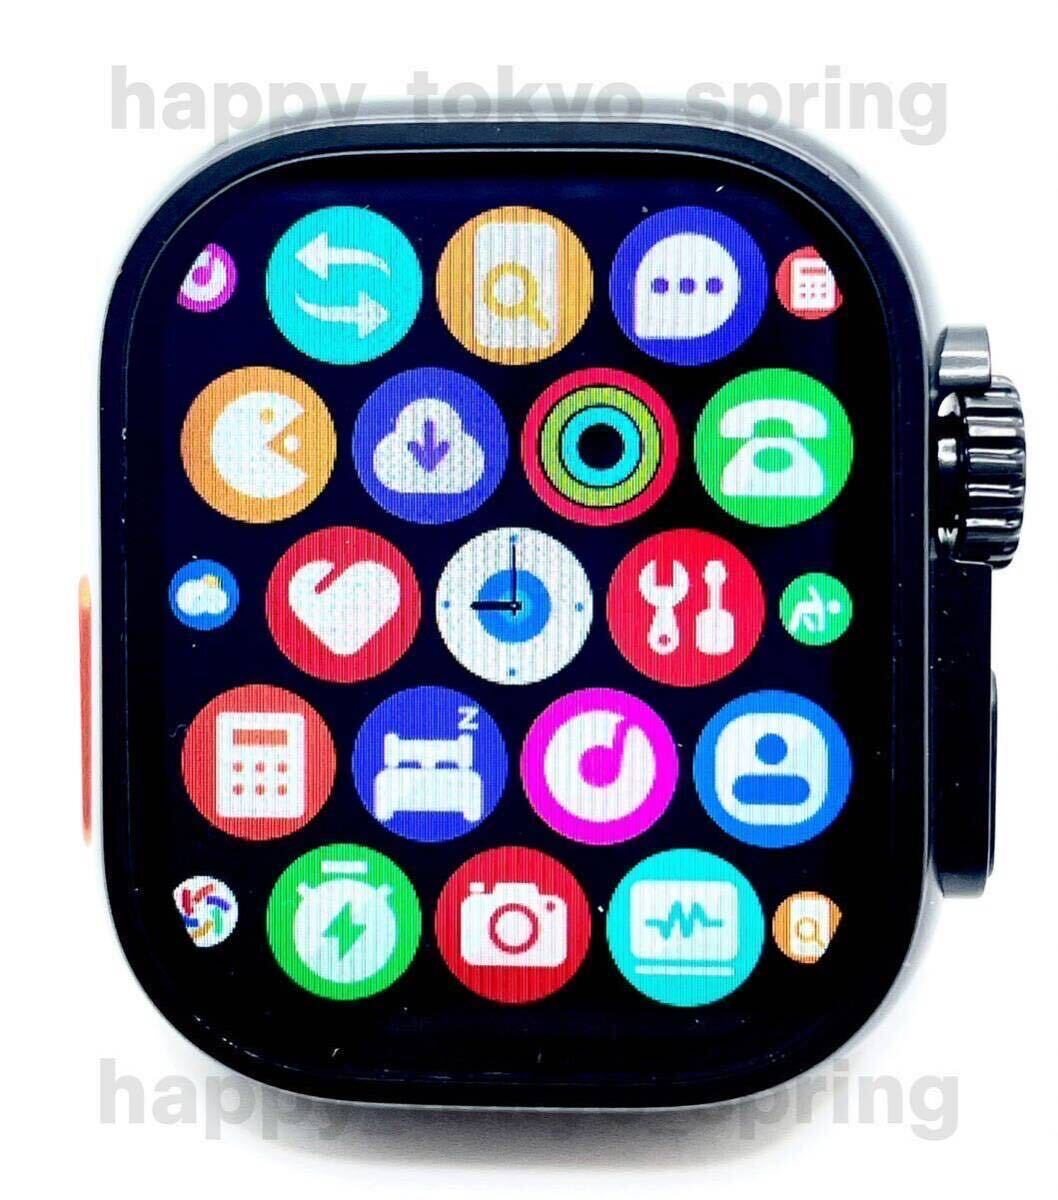  новый товар HK9 Ultra Black Edition 2.19 дюймовый большой экран S9 смарт-часы телефонный разговор музыка многофункциональный здоровье . средний кислород кровяное давление Apple Watch9 товар-заменитель.